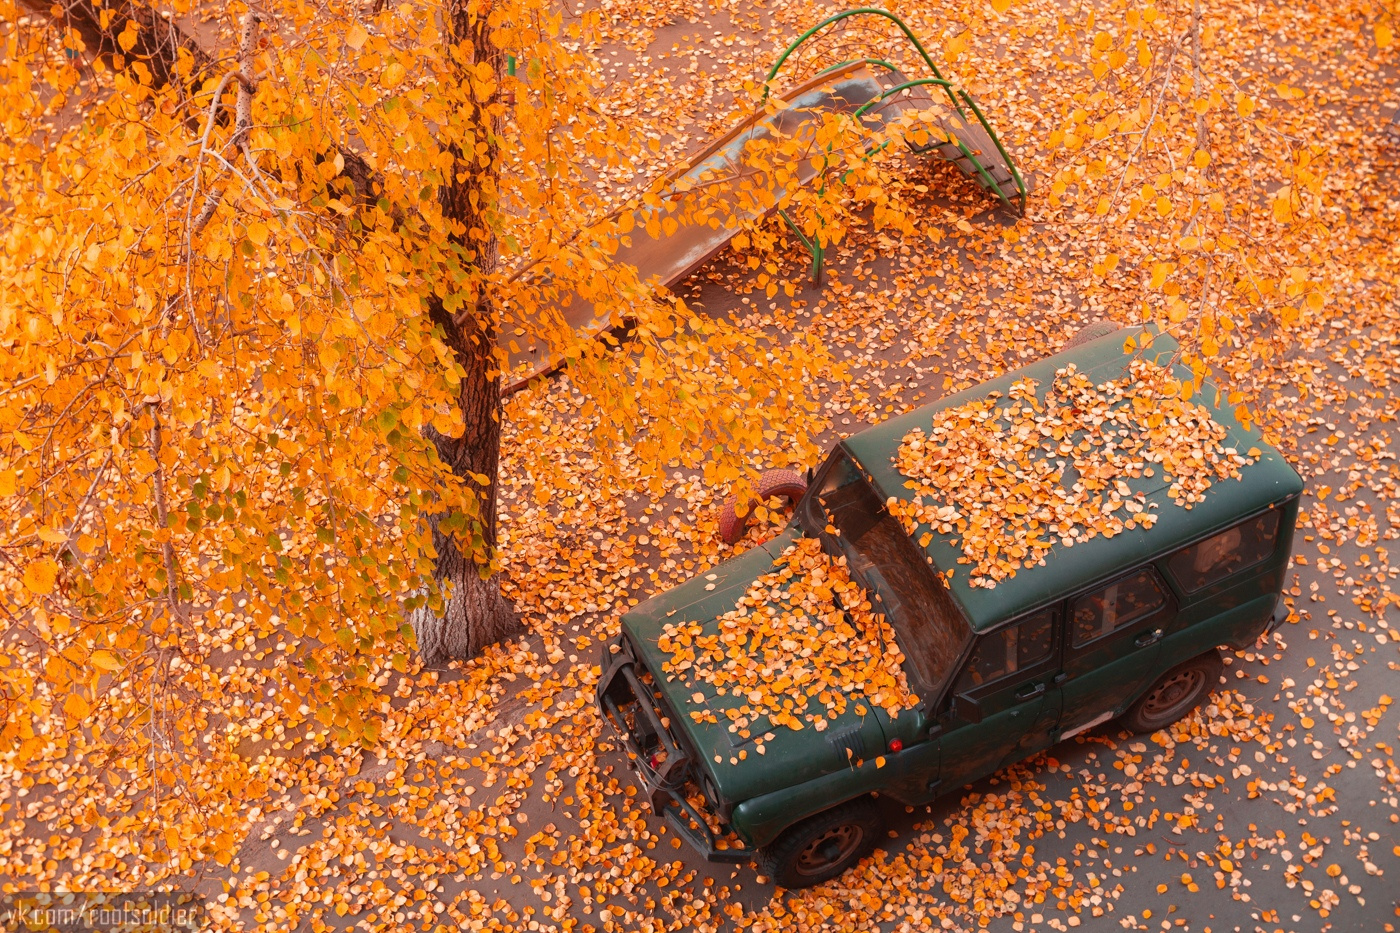 Осень в омске Омск город архитектура провинция регион россия открытка осень парк сад листопад автомобиль